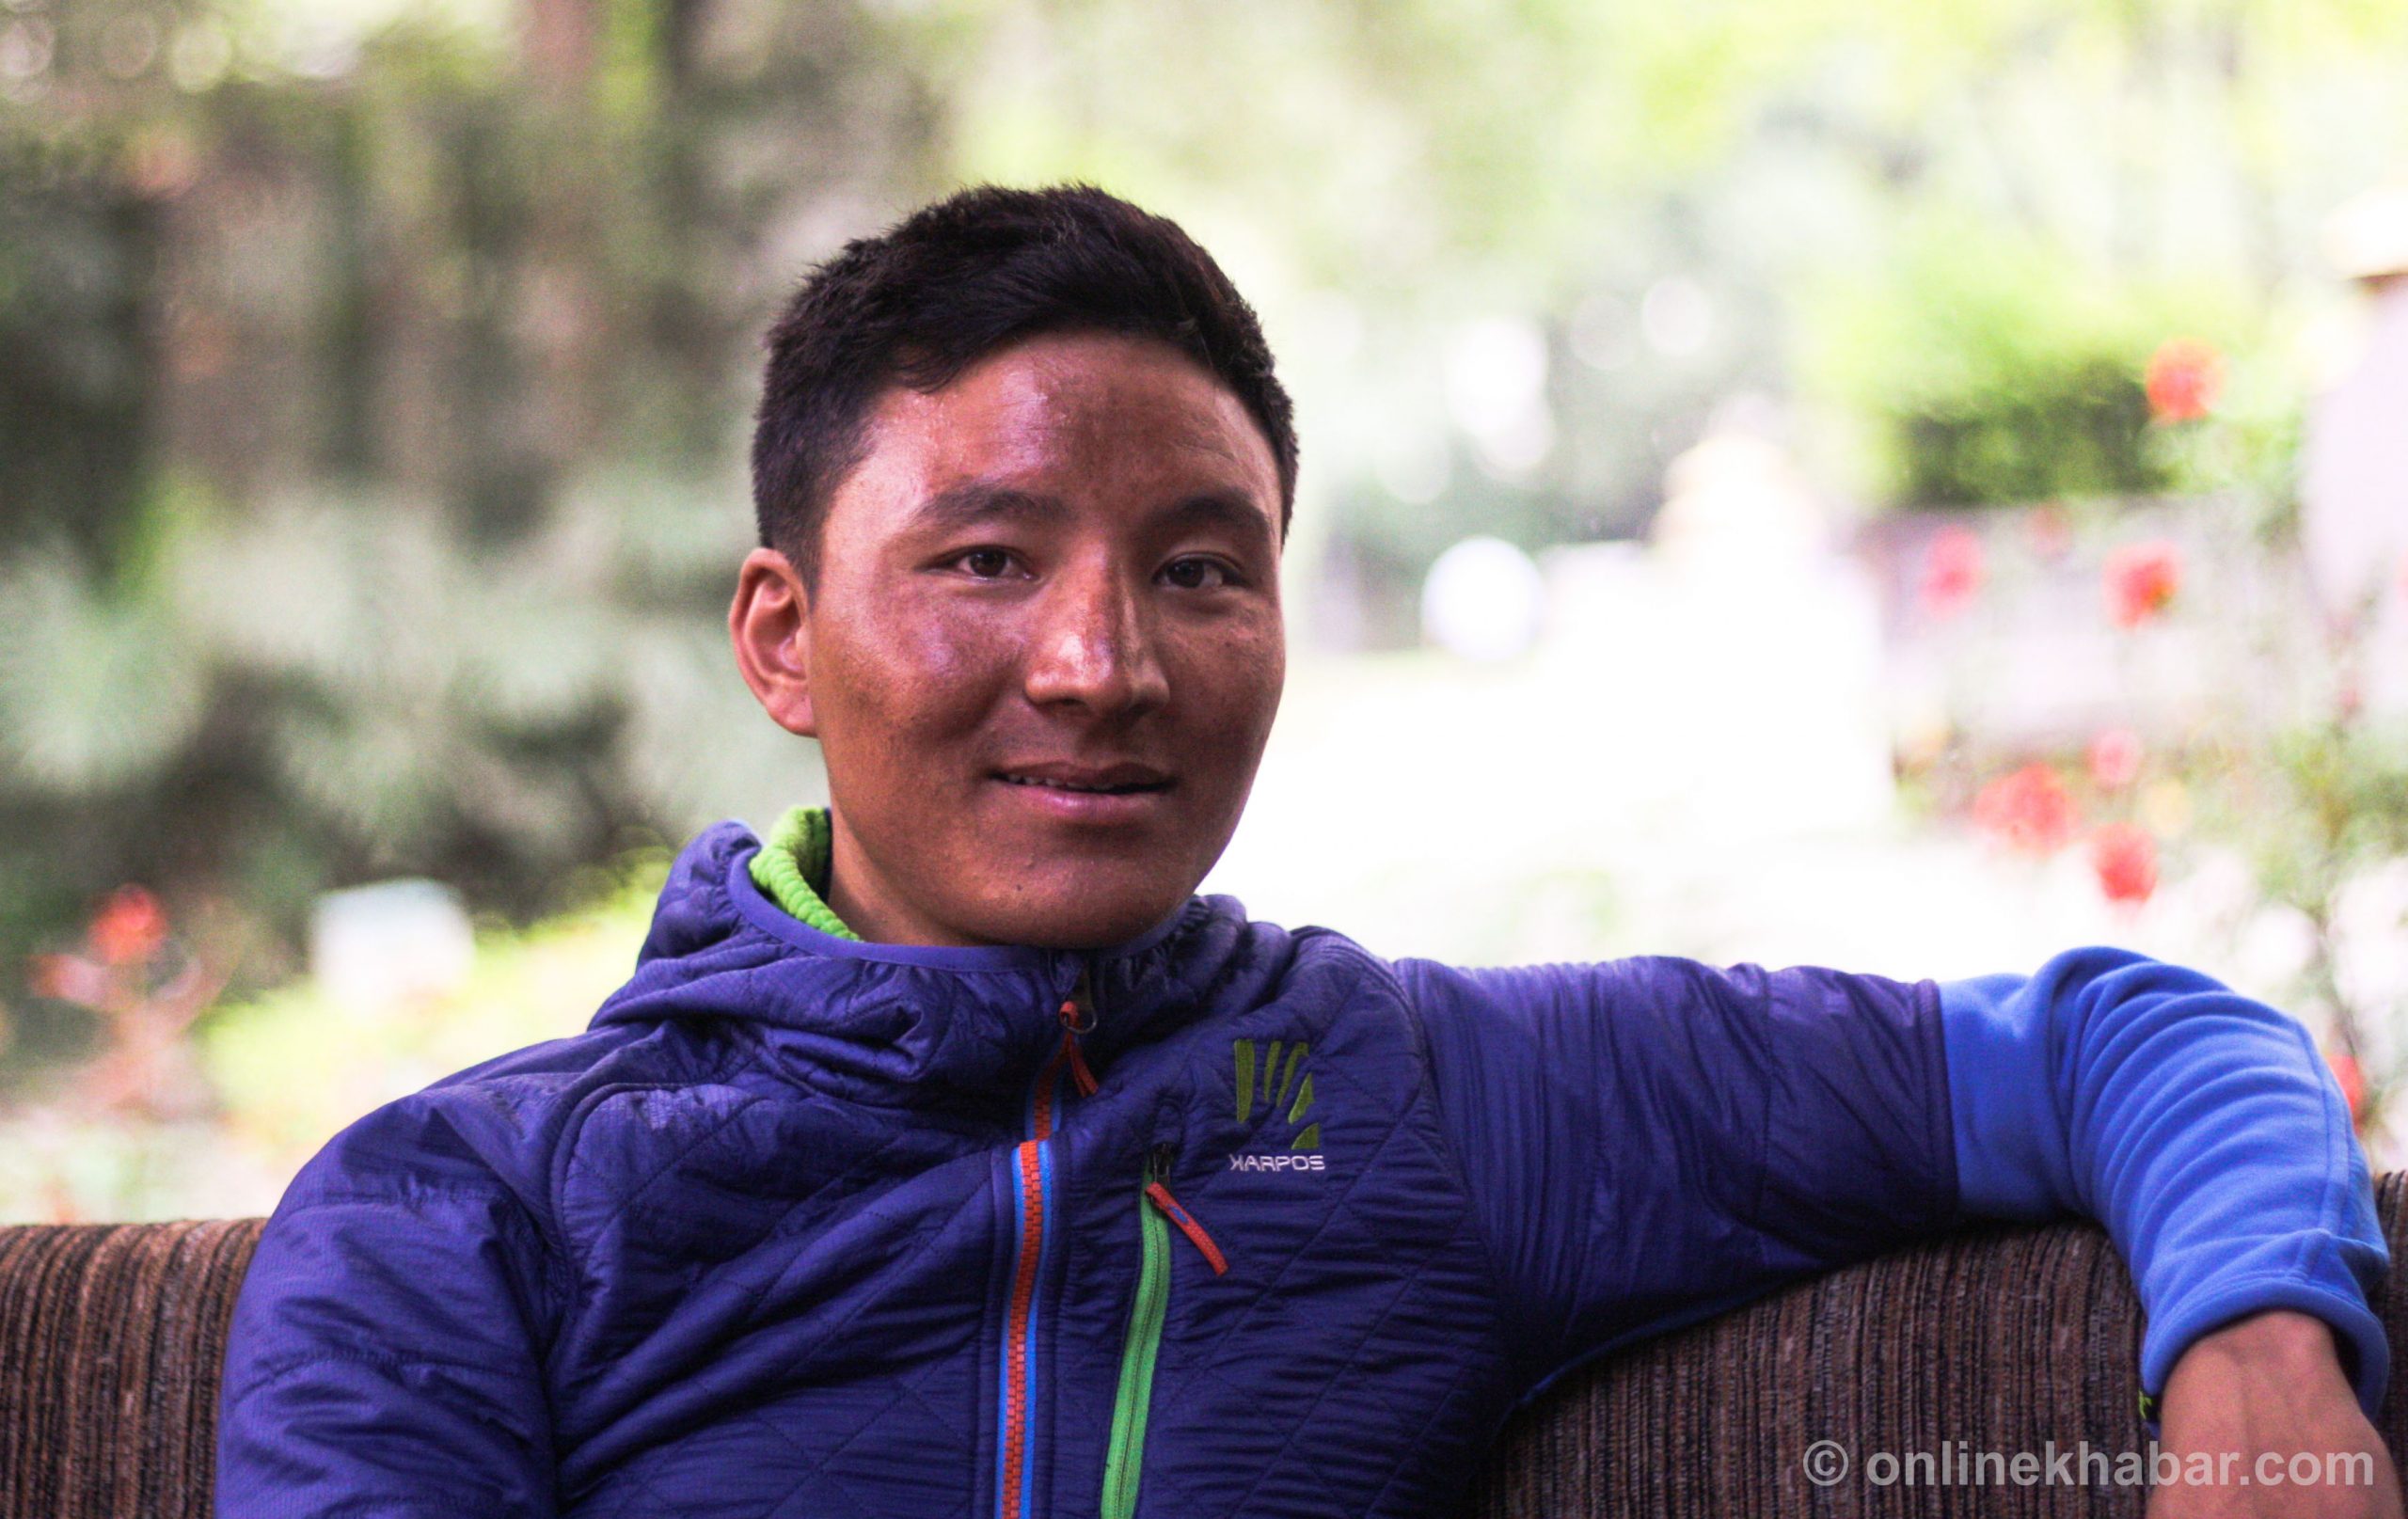 Legendary climber’s Nepali protégé wants to fulfil Swiss Machine’s dream.